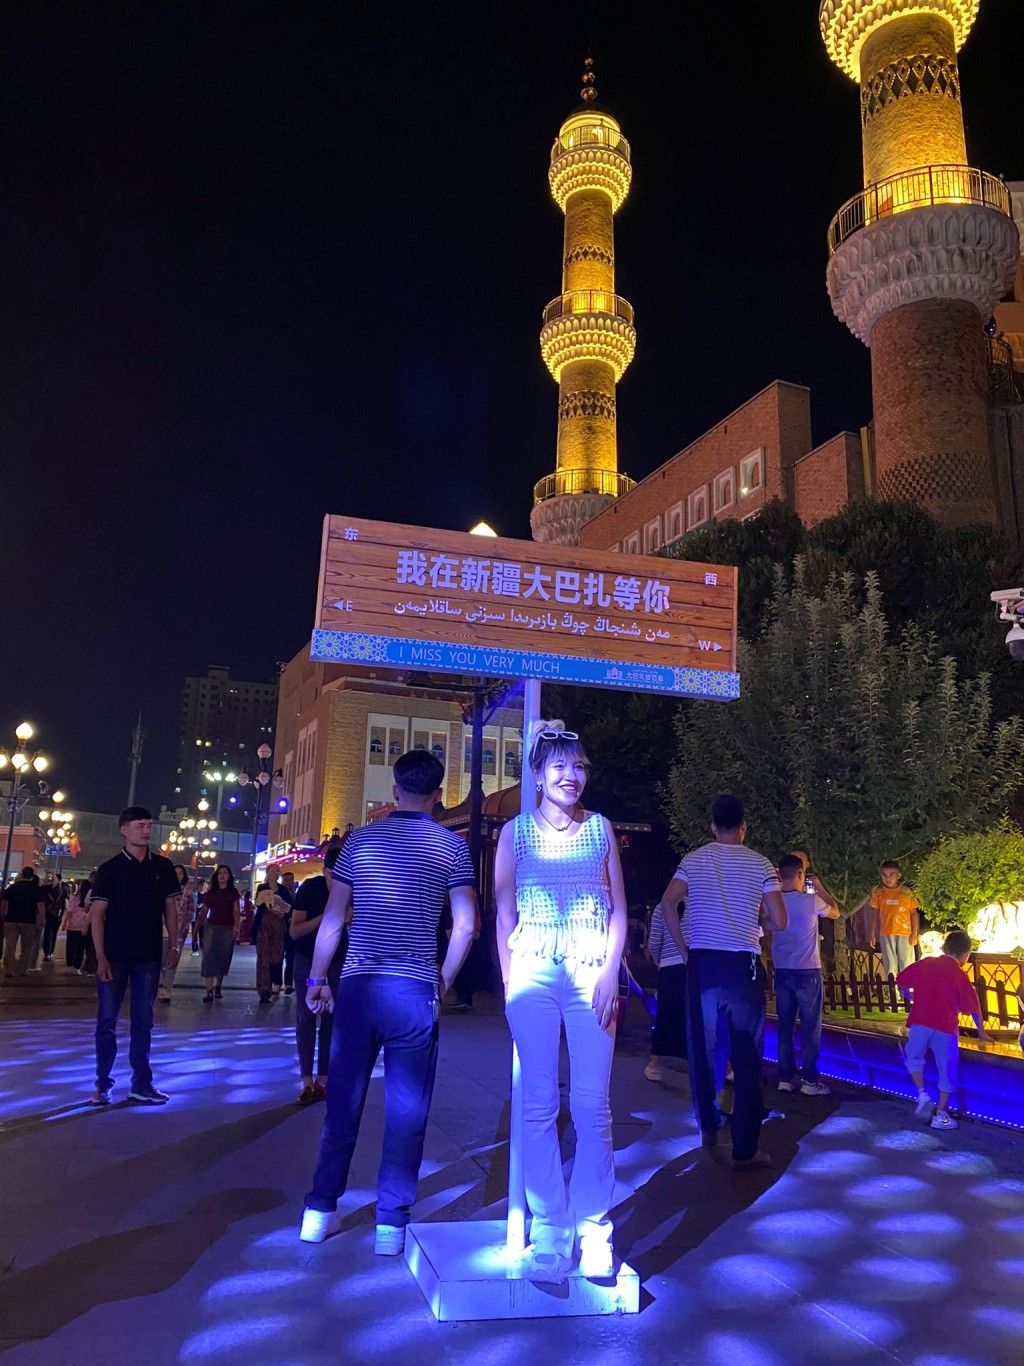 遊客在「我在新疆大巴扎等你」路牌前打卡。劉克剛攝